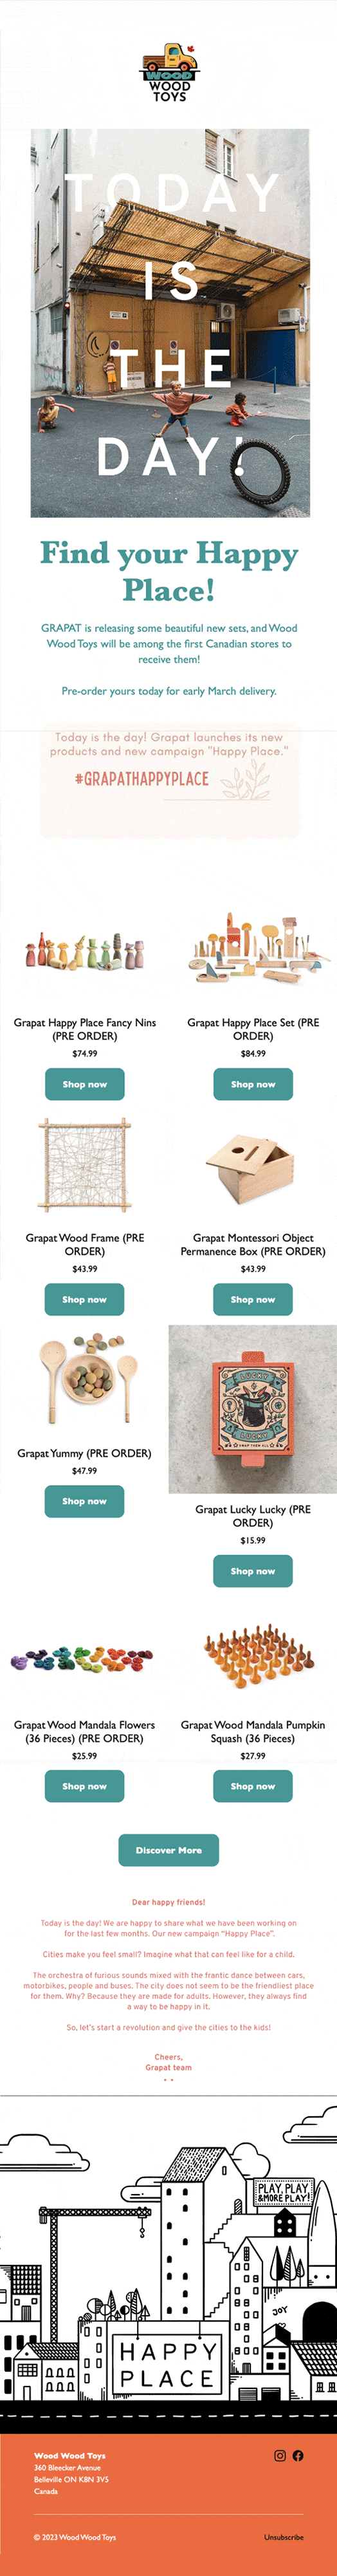 Un’email con i nuovi arrivi di bellissimi giocattoli in legno nel negozio online di Wood Wood Toys.